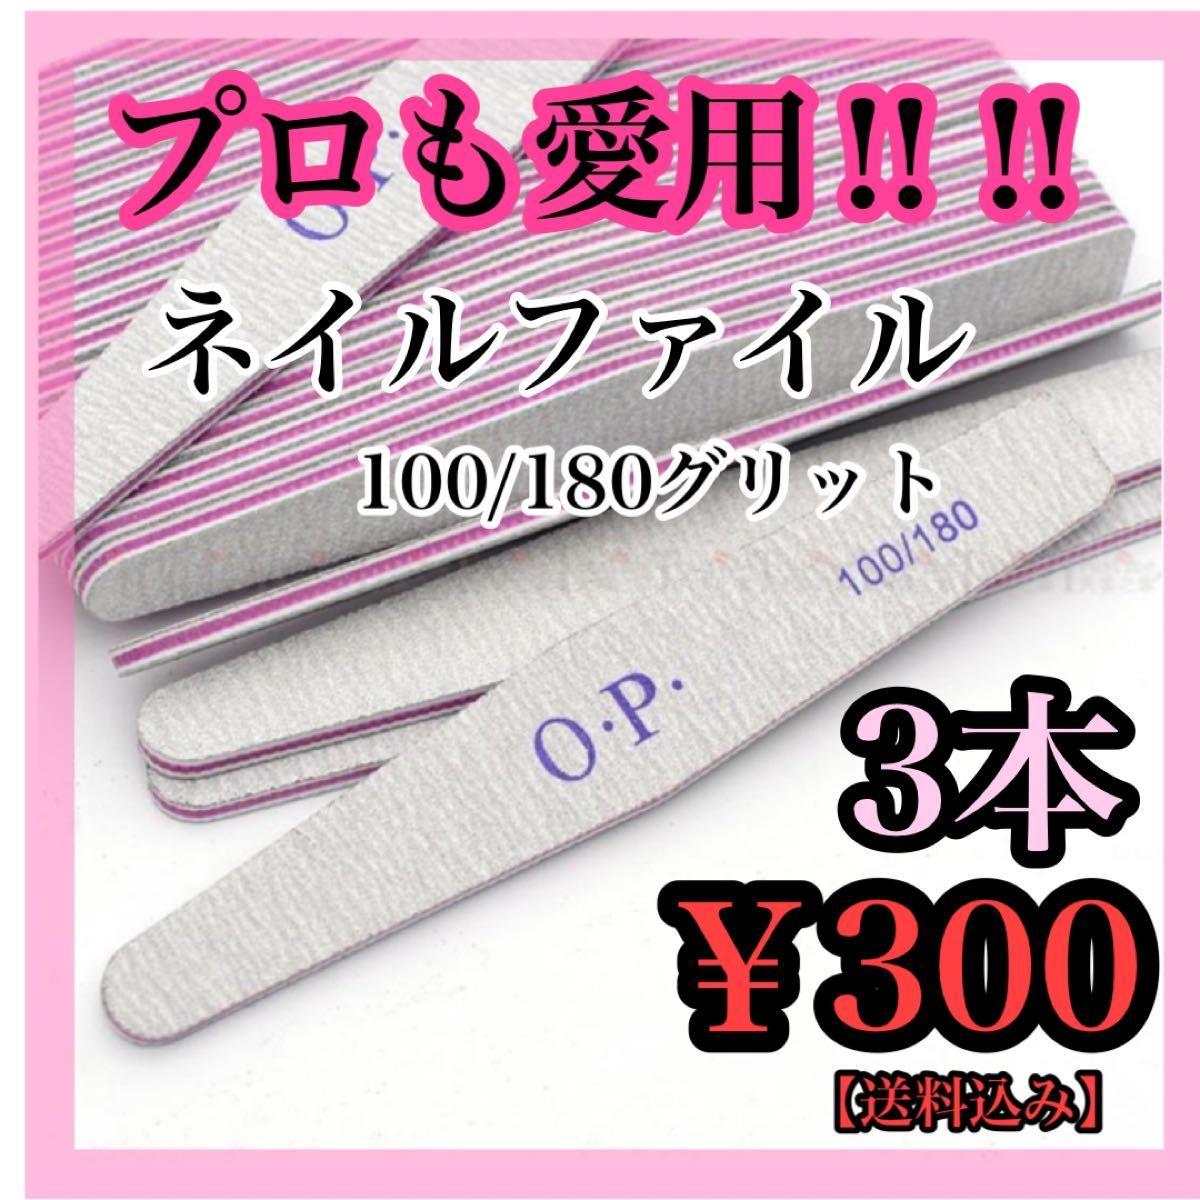 【3本】ネイル ファイル 爪やすり OPI 100 180 ひし形 サンディング